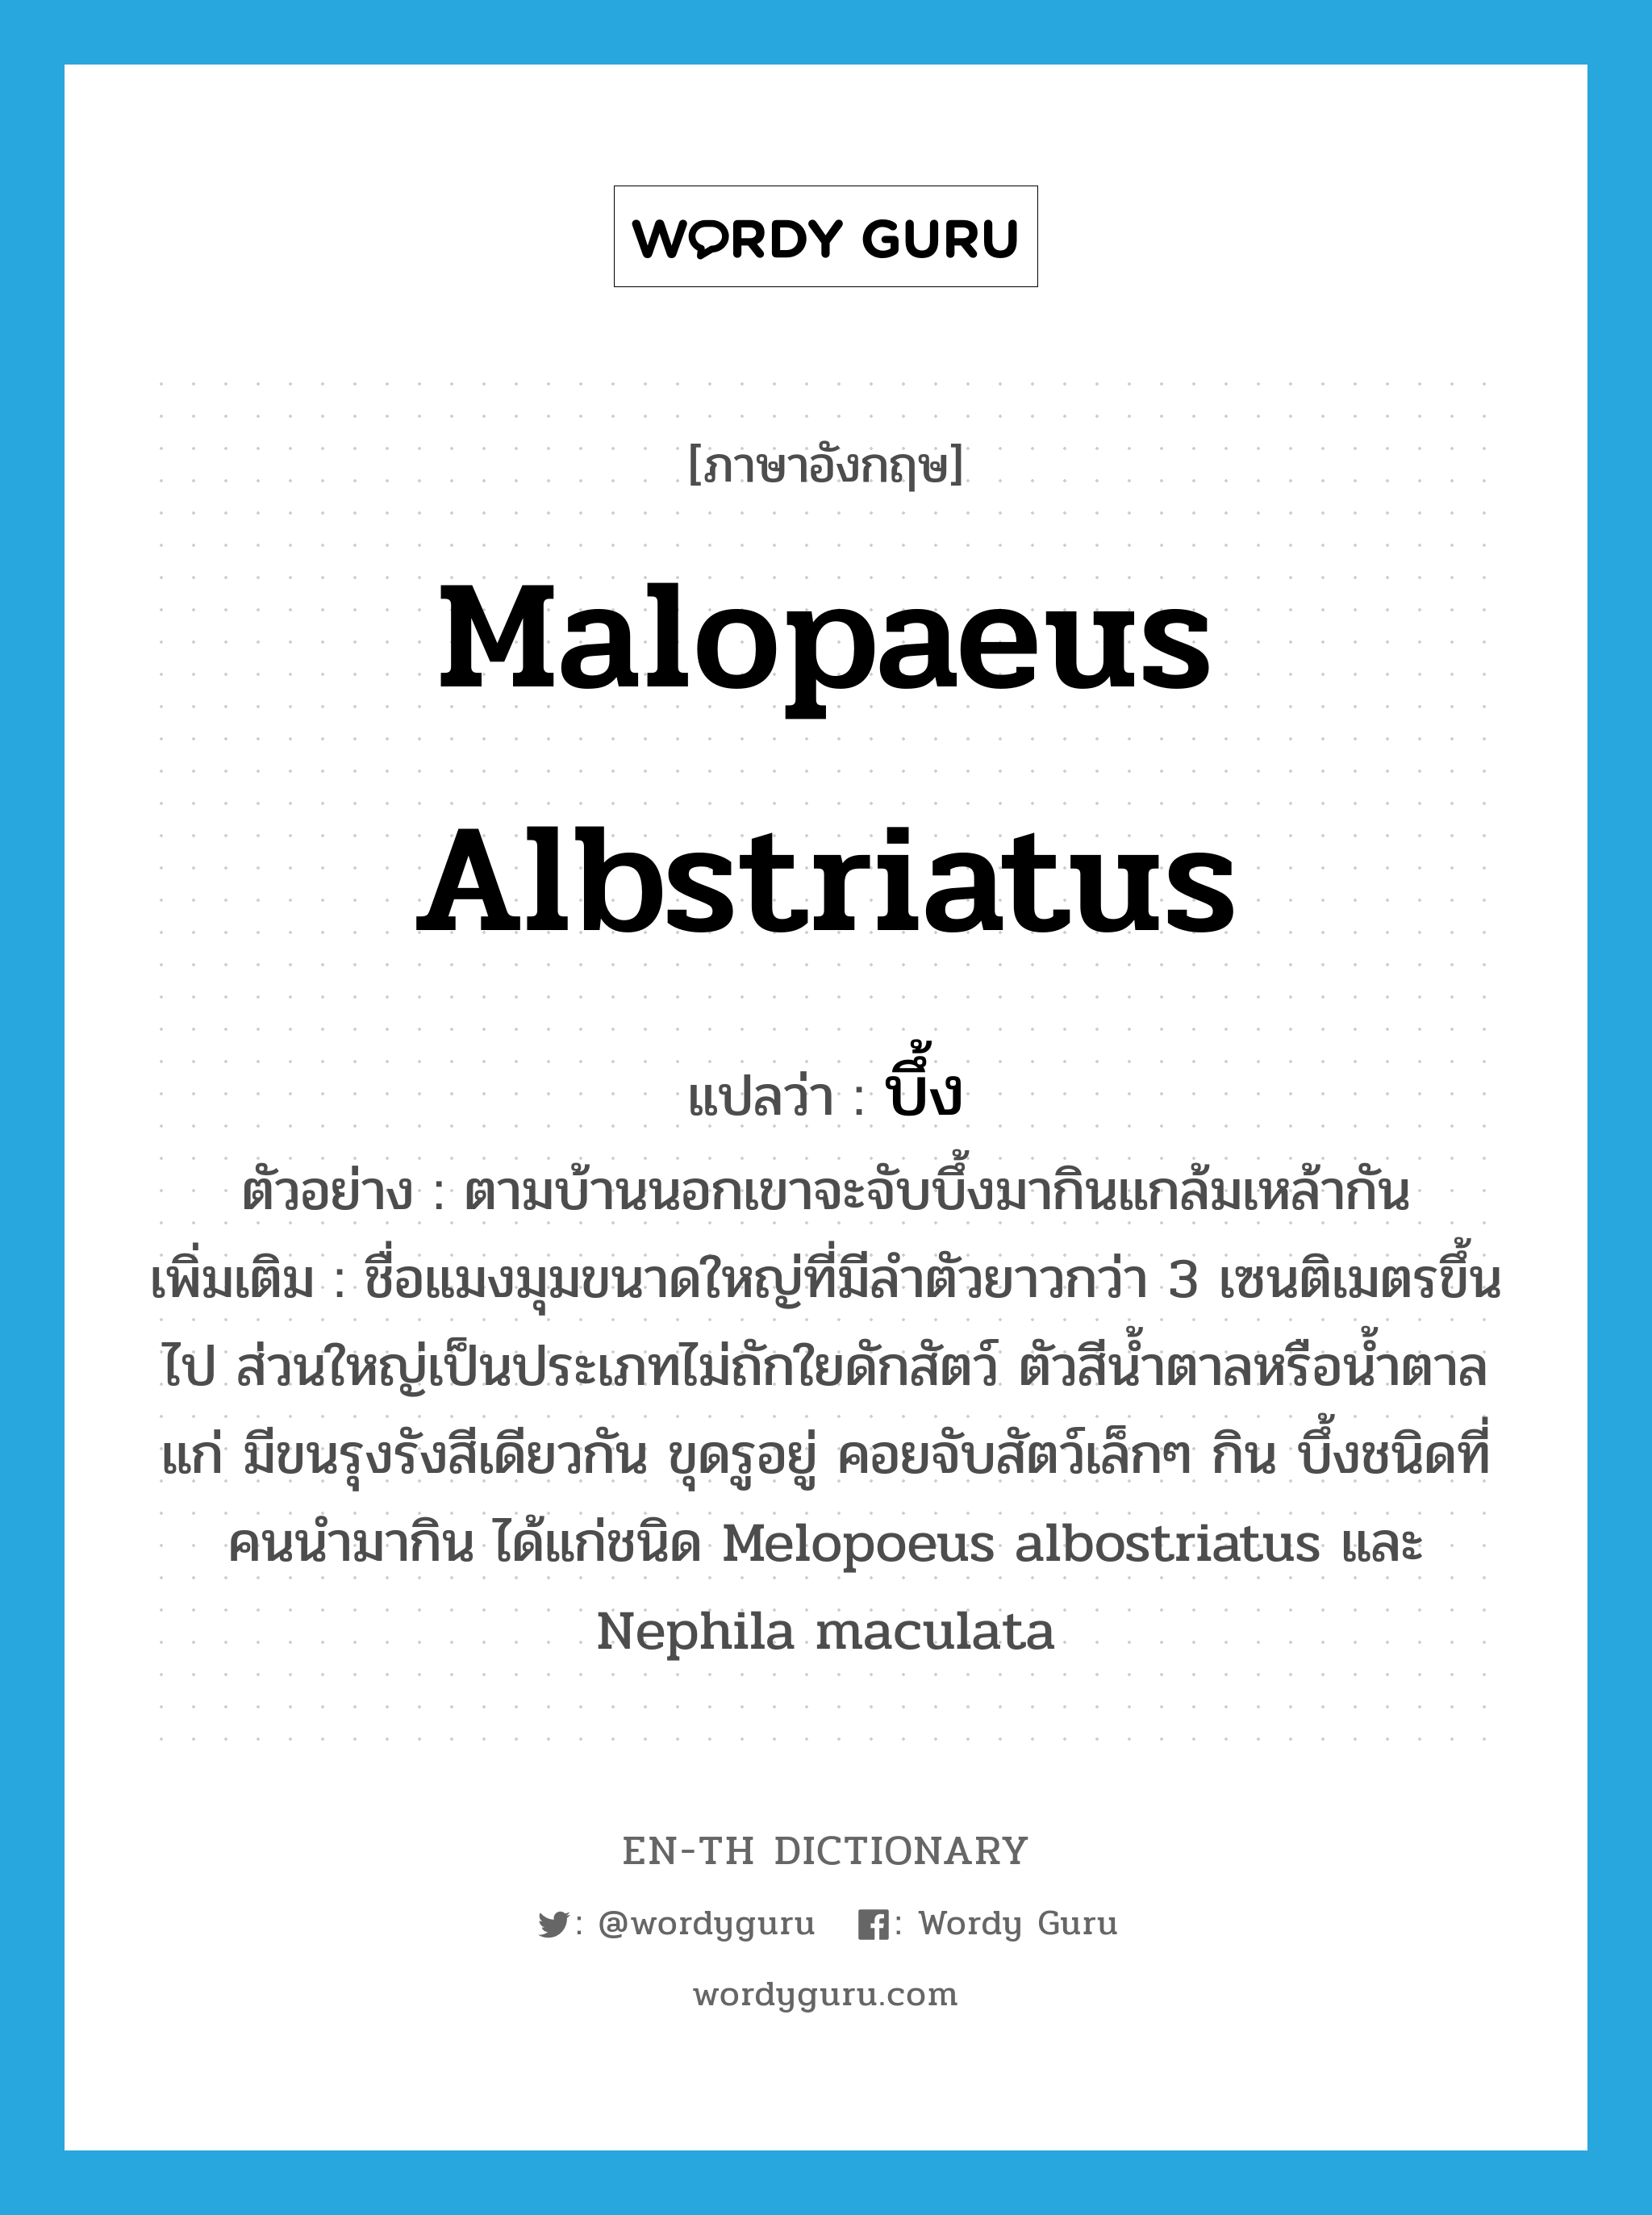 บึ้ง ภาษาอังกฤษ?, คำศัพท์ภาษาอังกฤษ บึ้ง แปลว่า Malopaeus albstriatus ประเภท N ตัวอย่าง ตามบ้านนอกเขาจะจับบึ้งมากินแกล้มเหล้ากัน เพิ่มเติม ชื่อแมงมุมขนาดใหญ่ที่มีลำตัวยาวกว่า 3 เซนติเมตรขึ้นไป ส่วนใหญ่เป็นประเภทไม่ถักใยดักสัตว์ ตัวสีน้ำตาลหรือน้ำตาลแก่ มีขนรุงรังสีเดียวกัน ขุดรูอยู่ คอยจับสัตว์เล็กๆ กิน บึ้งชนิดที่คนนำมากิน ได้แก่ชนิด Melopoeus albostriatus และ Nephila maculata หมวด N